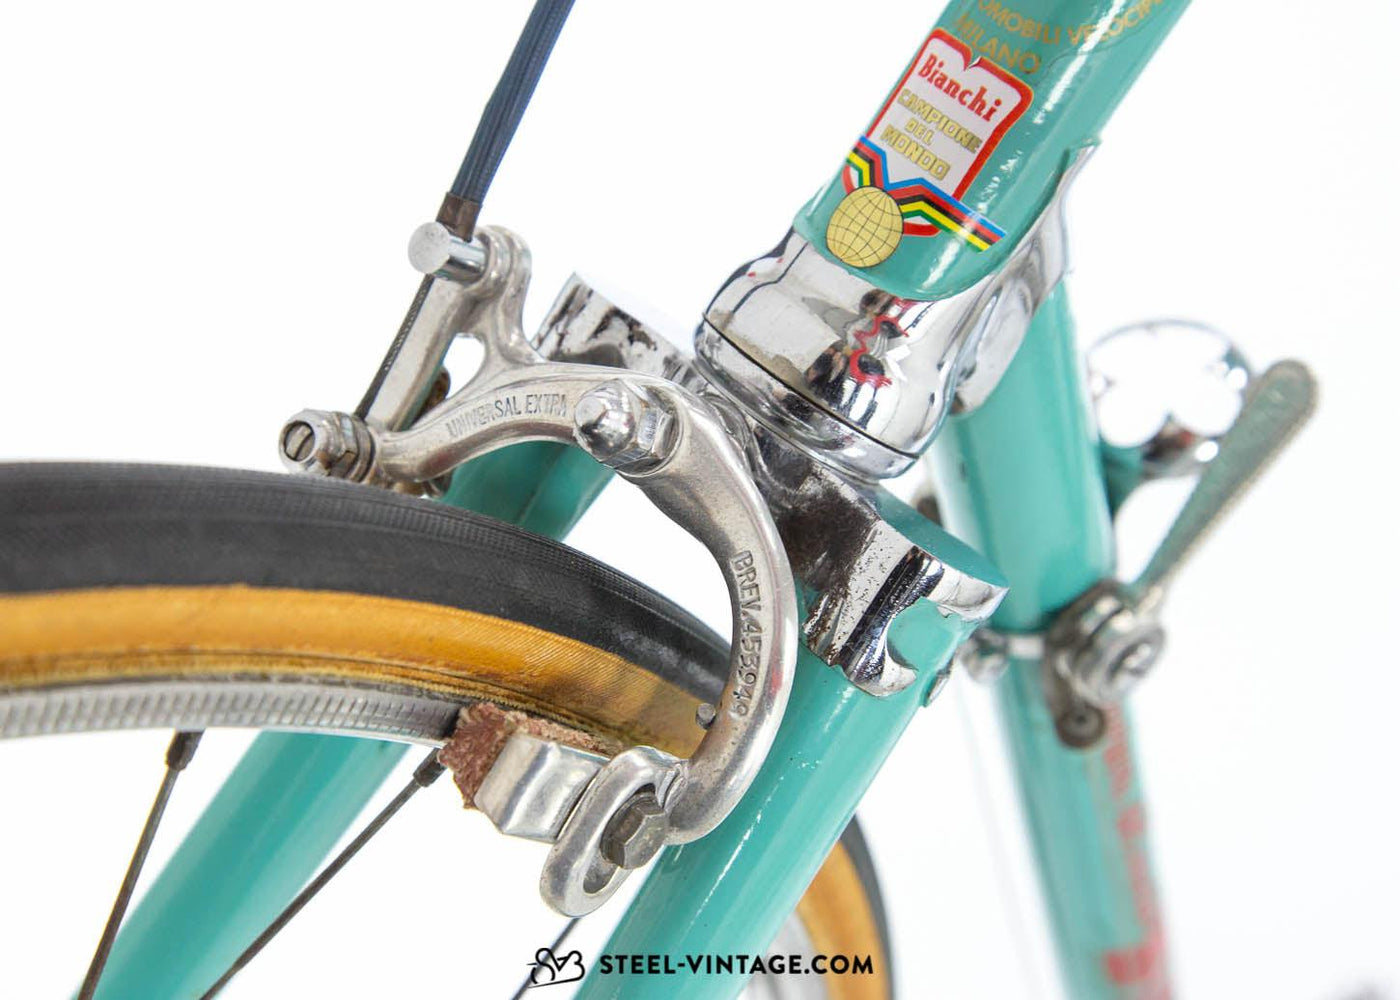 Bianchi Campione Del Mondo Road Bike Classic 1950s - Steel Vintage Bikes